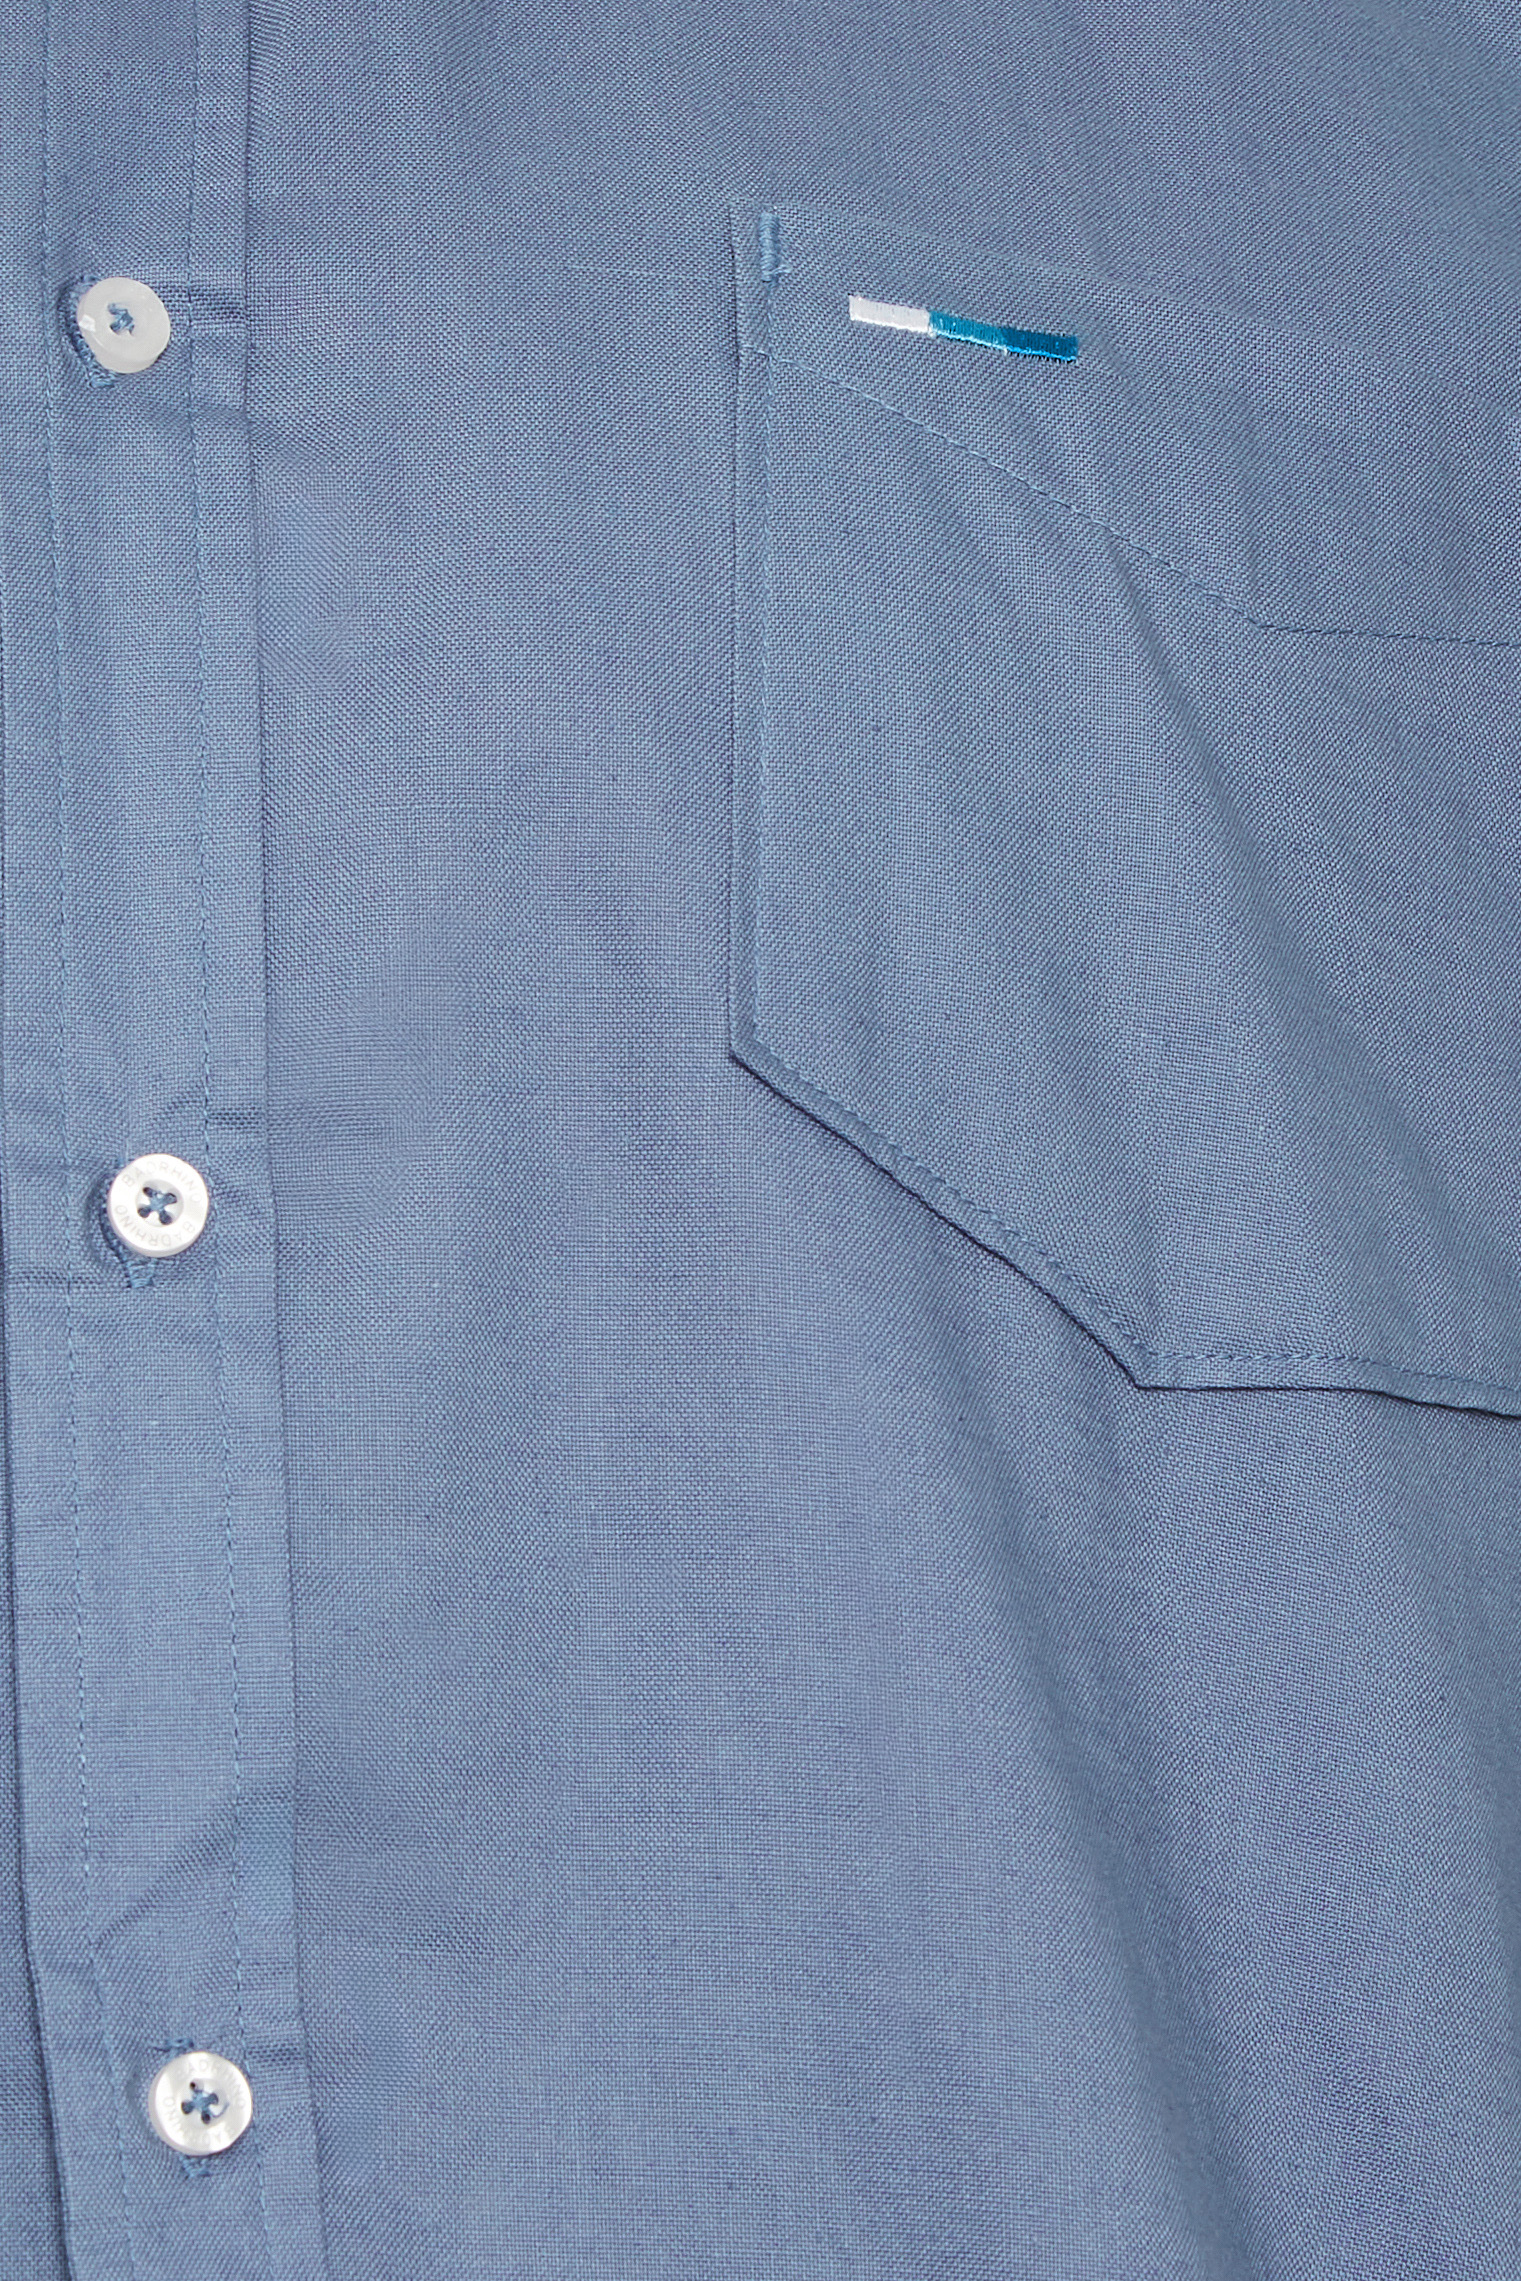 BadRhino Blue Essential Long Sleeve Oxford Shirt | BadRhino